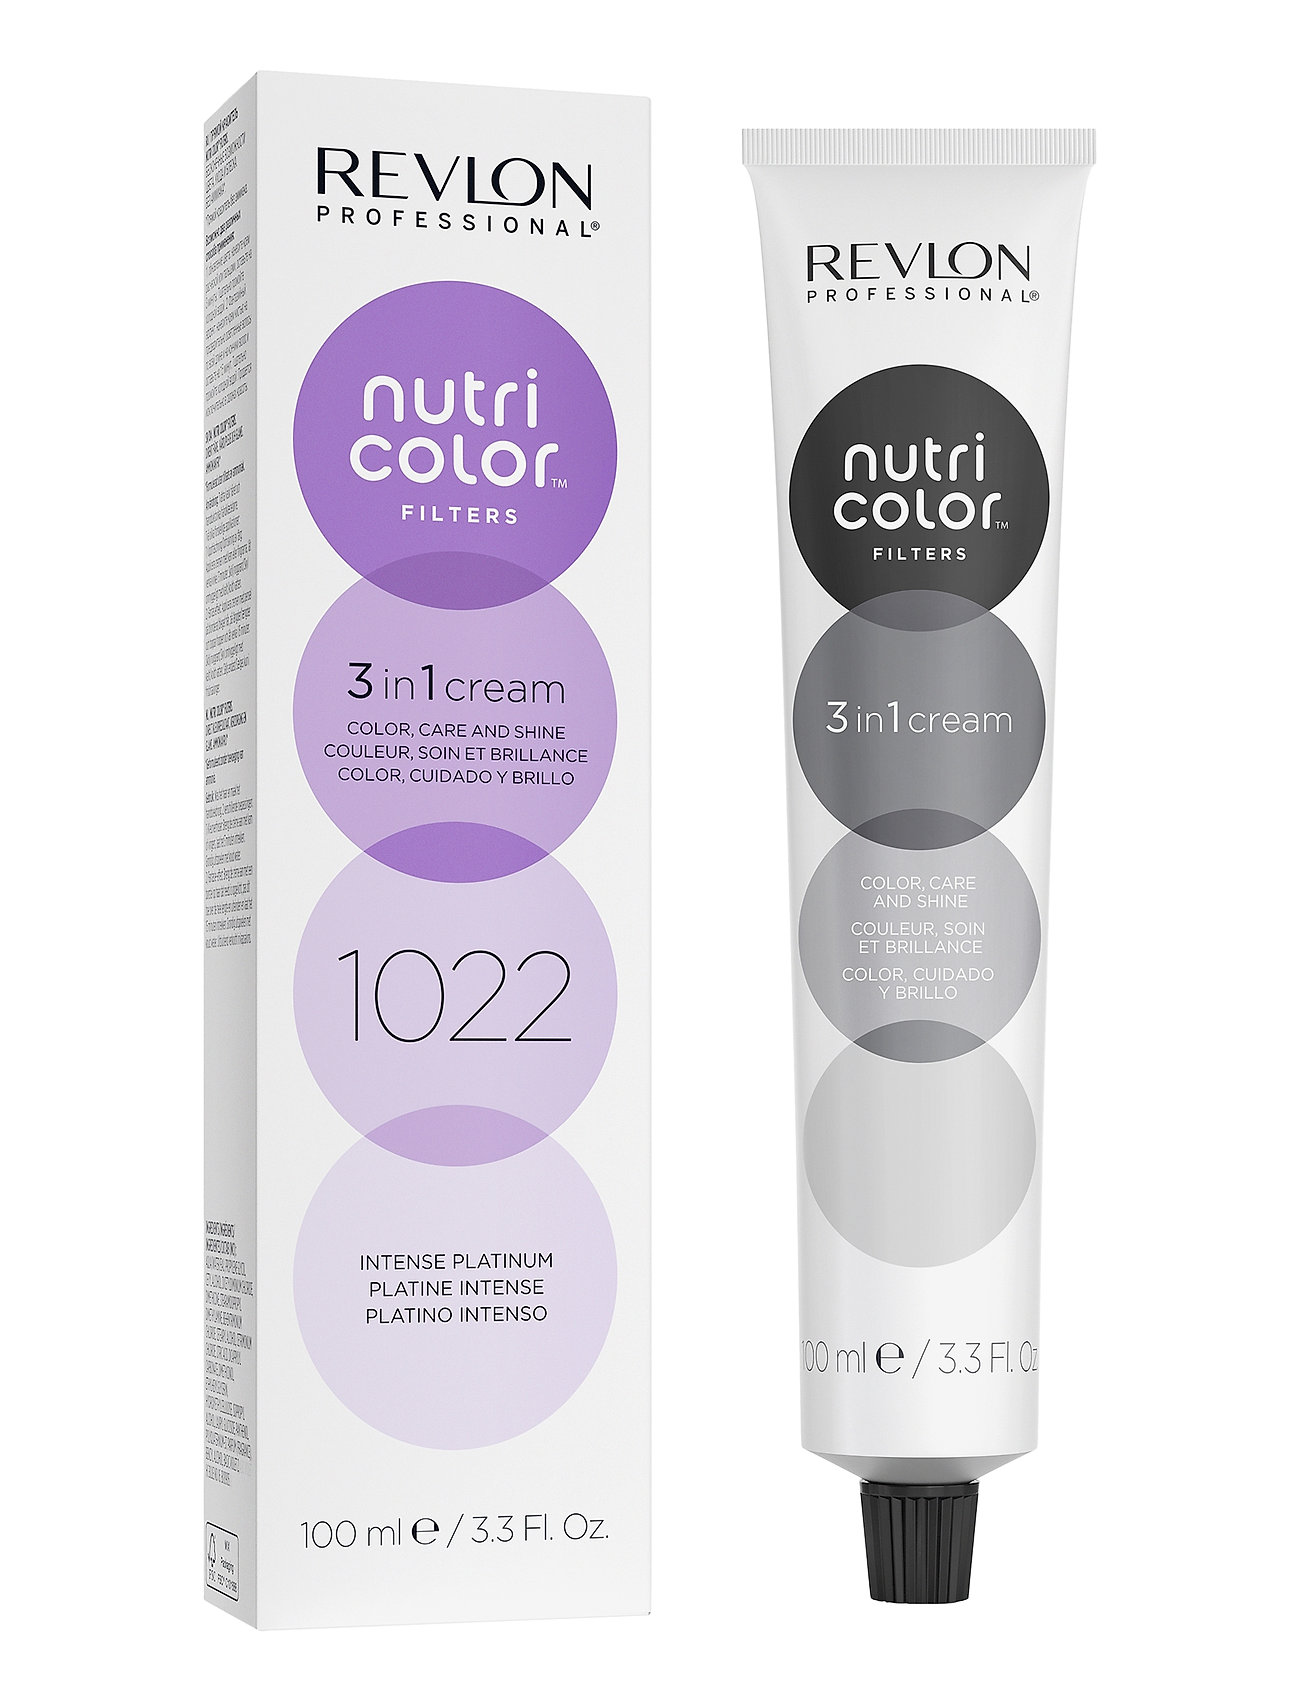 "Revlon Professional" "Nutri Color Filters 1022 Beauty Women Hair Care Treatments Revlon